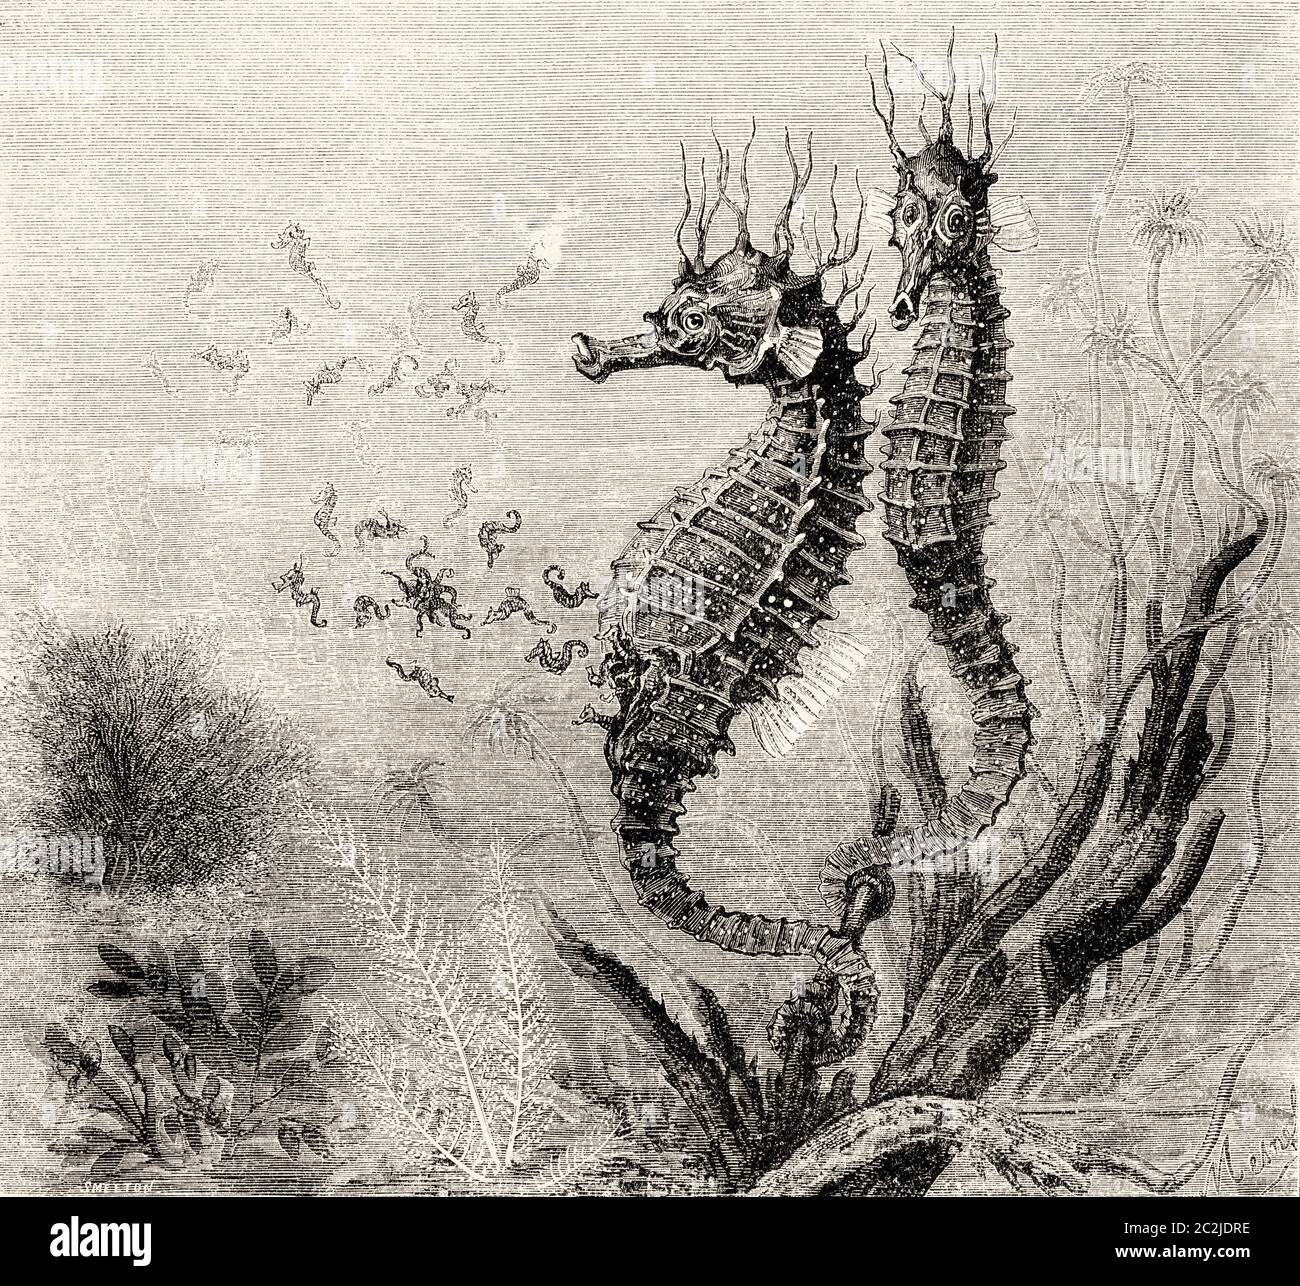 Das gewöhnliche Kurzschnauzenpferd (Hippocampus hippocampus) ist eine Fischart aus der Familie der Syngnathidae. Alte Illustration aus dem 19. Jahrhundert, El Mundo Ilustrado 1880 Stockfoto